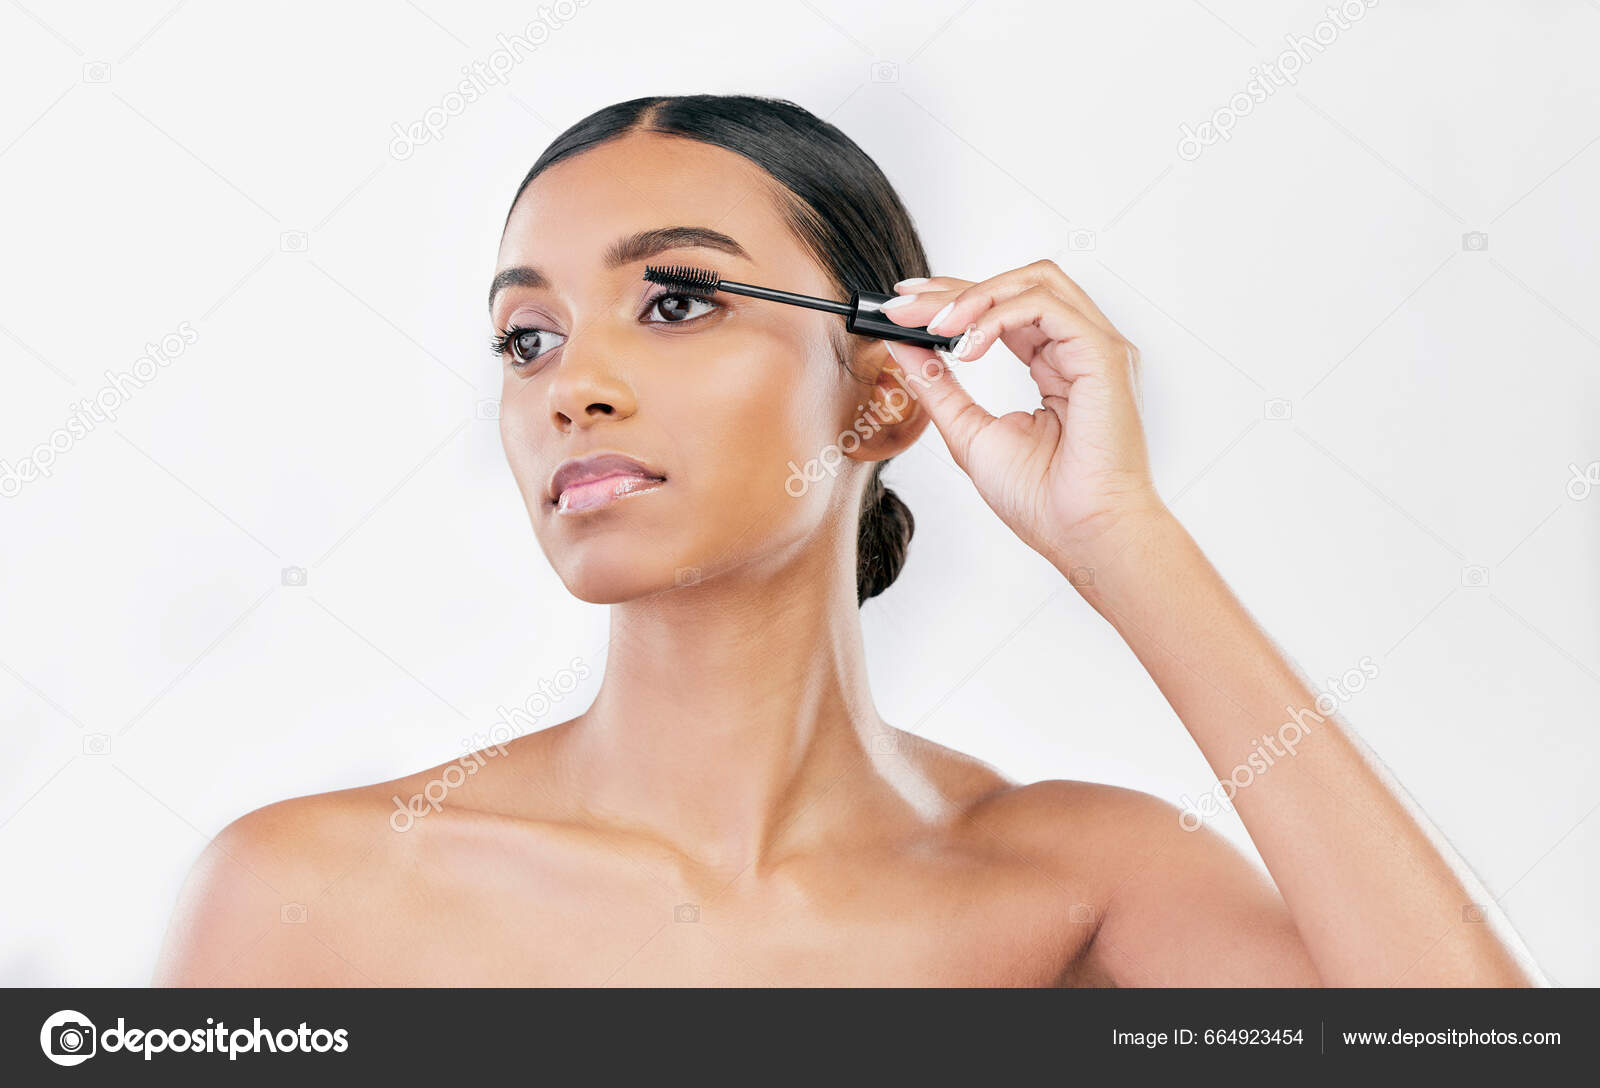 Maquiagem simples diária cosmetologia e beleza mulher atraente